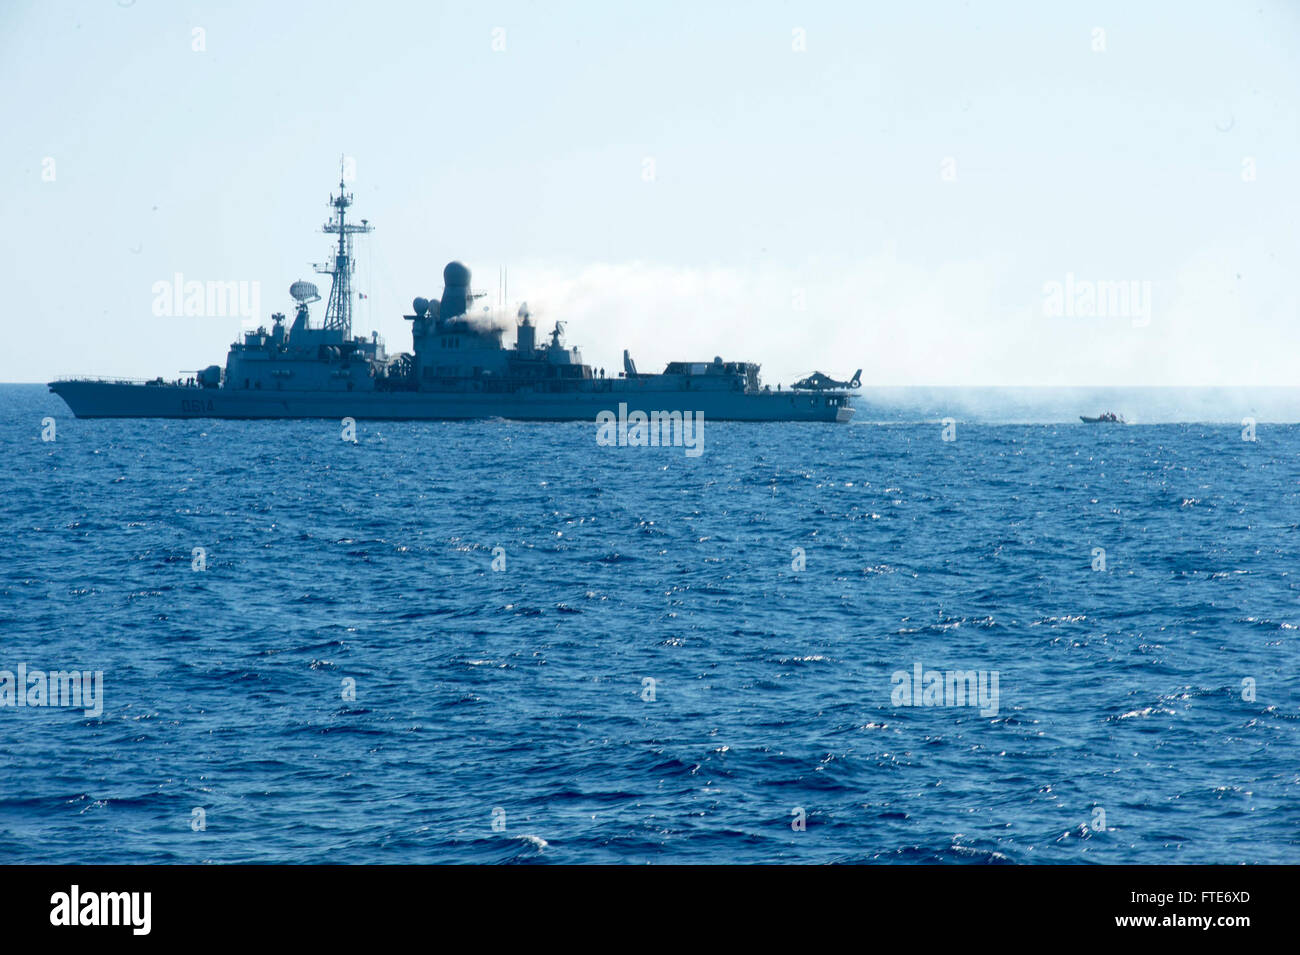 131026-N-UD469-208: MEDITERRANEAN SEA (26. Oktober 2013) - Mitglieder eines Such- und Rettungsaktionen befestigt der Arleigh-Burke-Klasse geführte Flugkörper Zerstörer USS Stout (DDG-55) Manöver ein Festrumpf-Schlauchboot, die französische Anti-Fregatte FS Cassard (D614) für einen Personal-Transfer, die Schiffe zu besichtigen. Stout, Gridley in Norfolk, Virginia, ist auf eine geplante Bereitstellung unterstützen maritimer Sicherheitsoperationen und Sicherheitsbemühungen Zusammenarbeit Theater in den USA 6. Flotte Einsatzgebiet. (Foto: U.S. Navy Mass Communication Specialist 2. Klasse Amanda R. Gray/freigegeben) Stockfoto